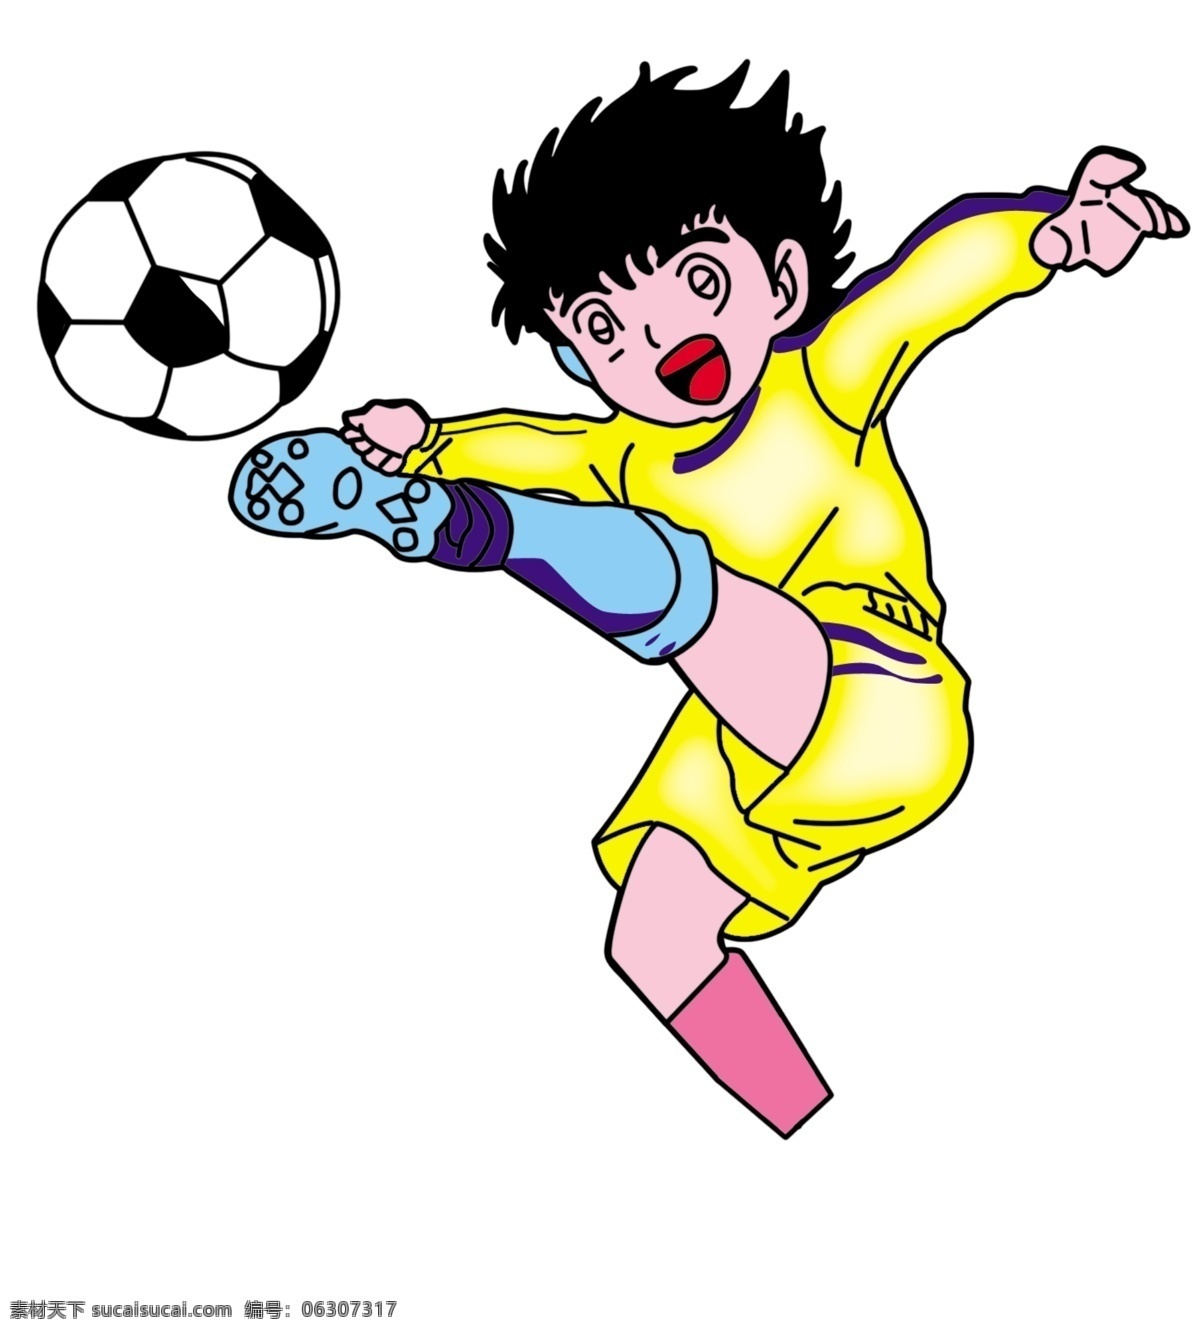 分层 卡通 人物 踢球 小人 源文件库 足球 小子 模板下载 足球小子 球员 日本卡通人物 抬腿 矢量图 日常生活